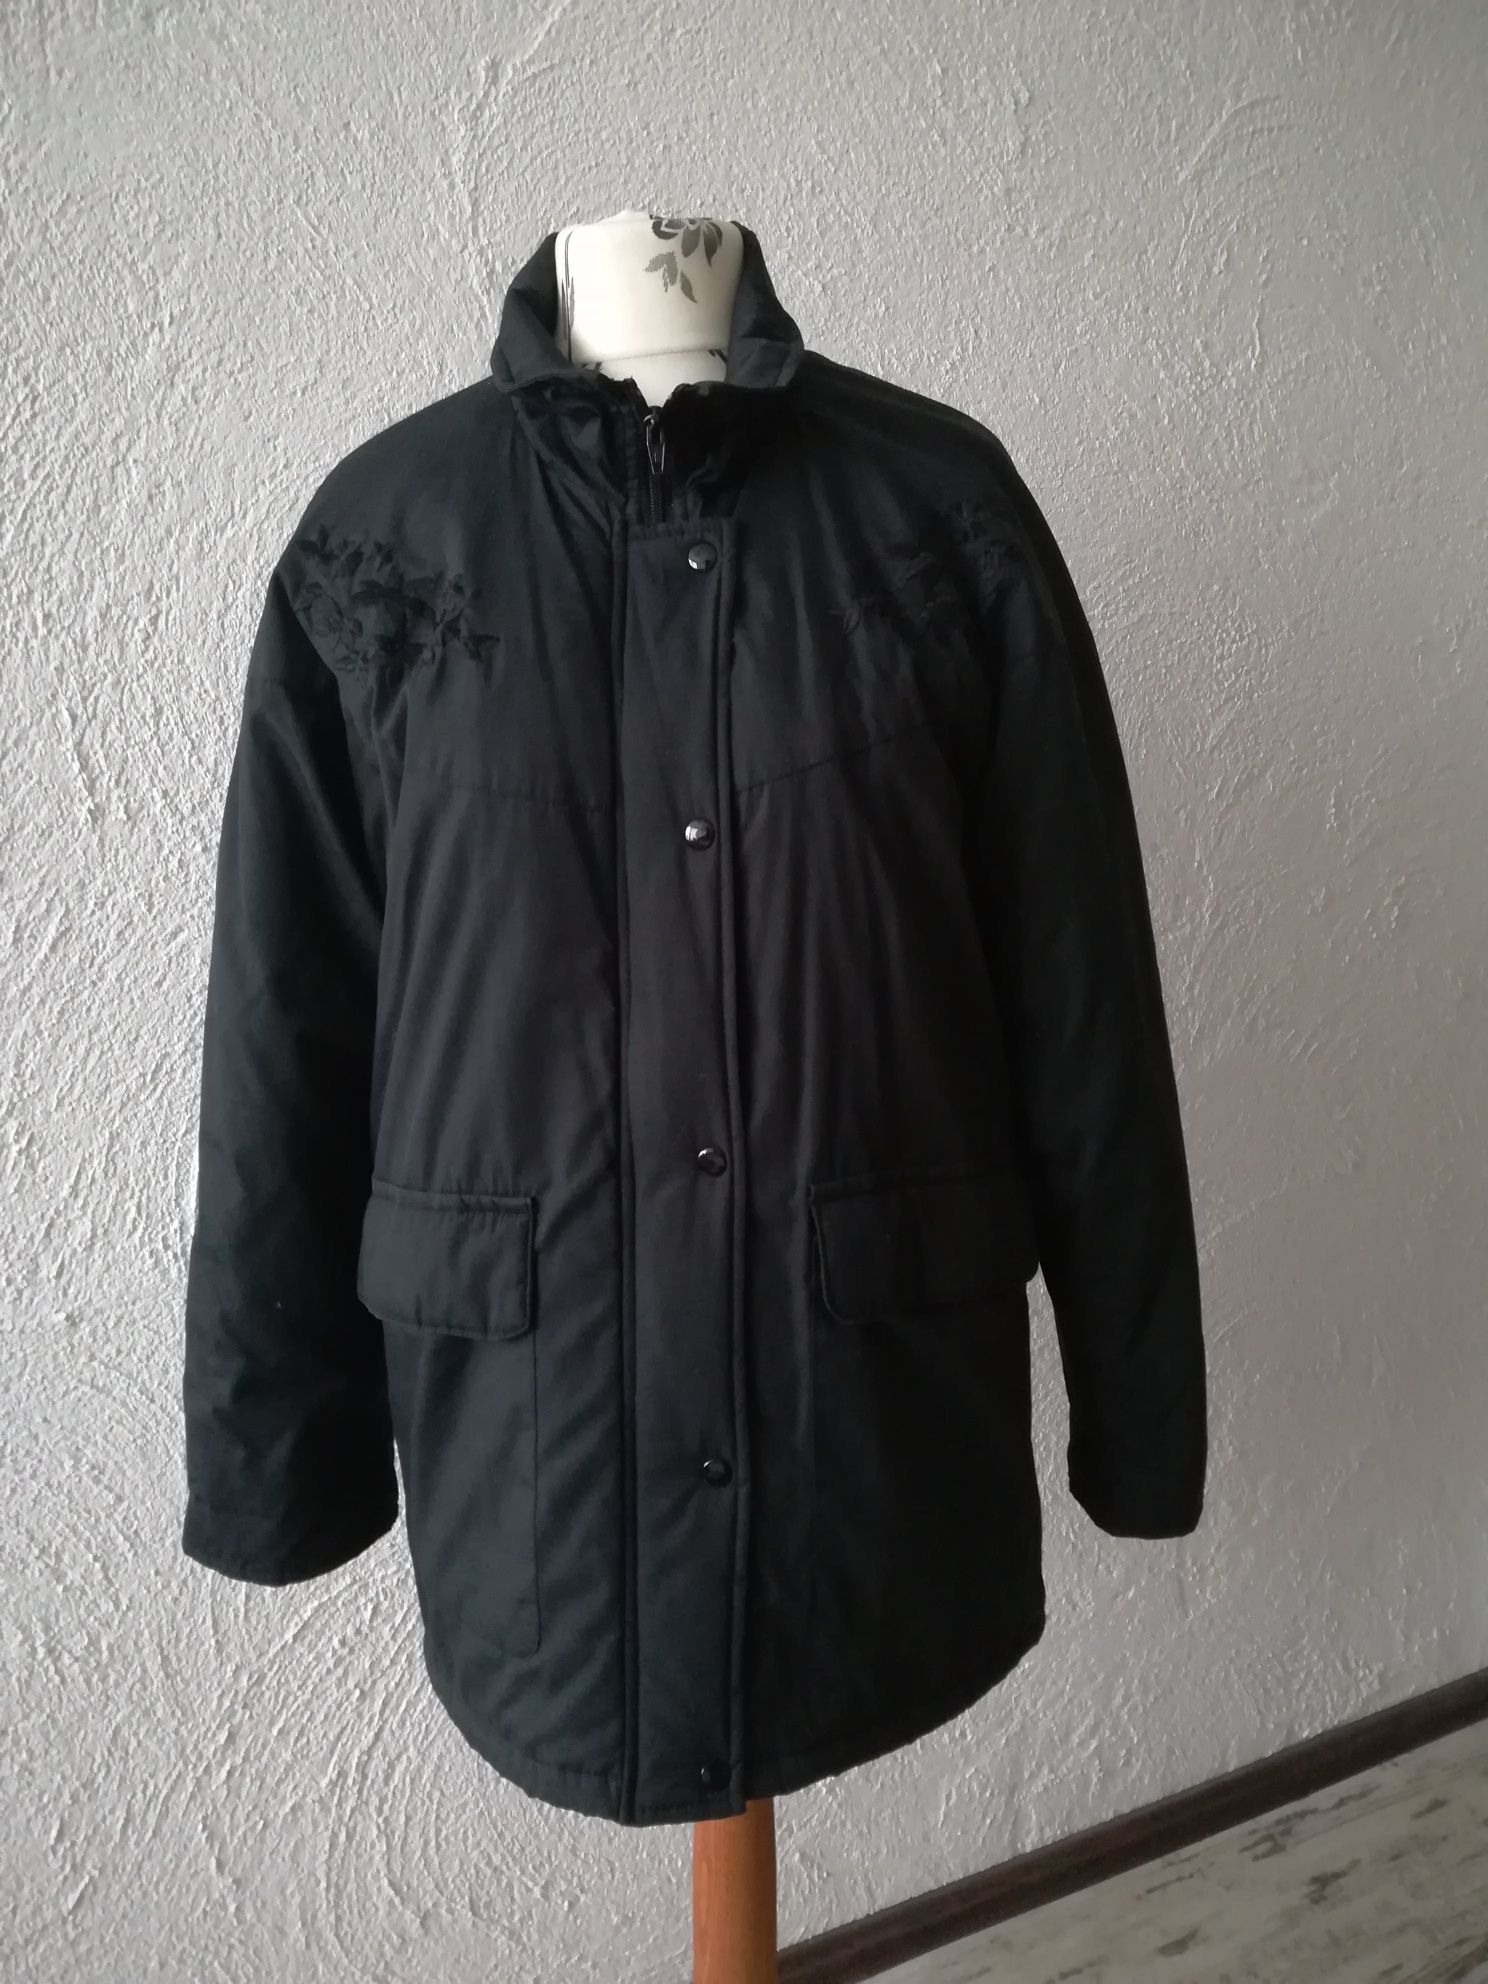 Jak nowa elegancka kurtka damska 42 XL czarna z haftami zimowa